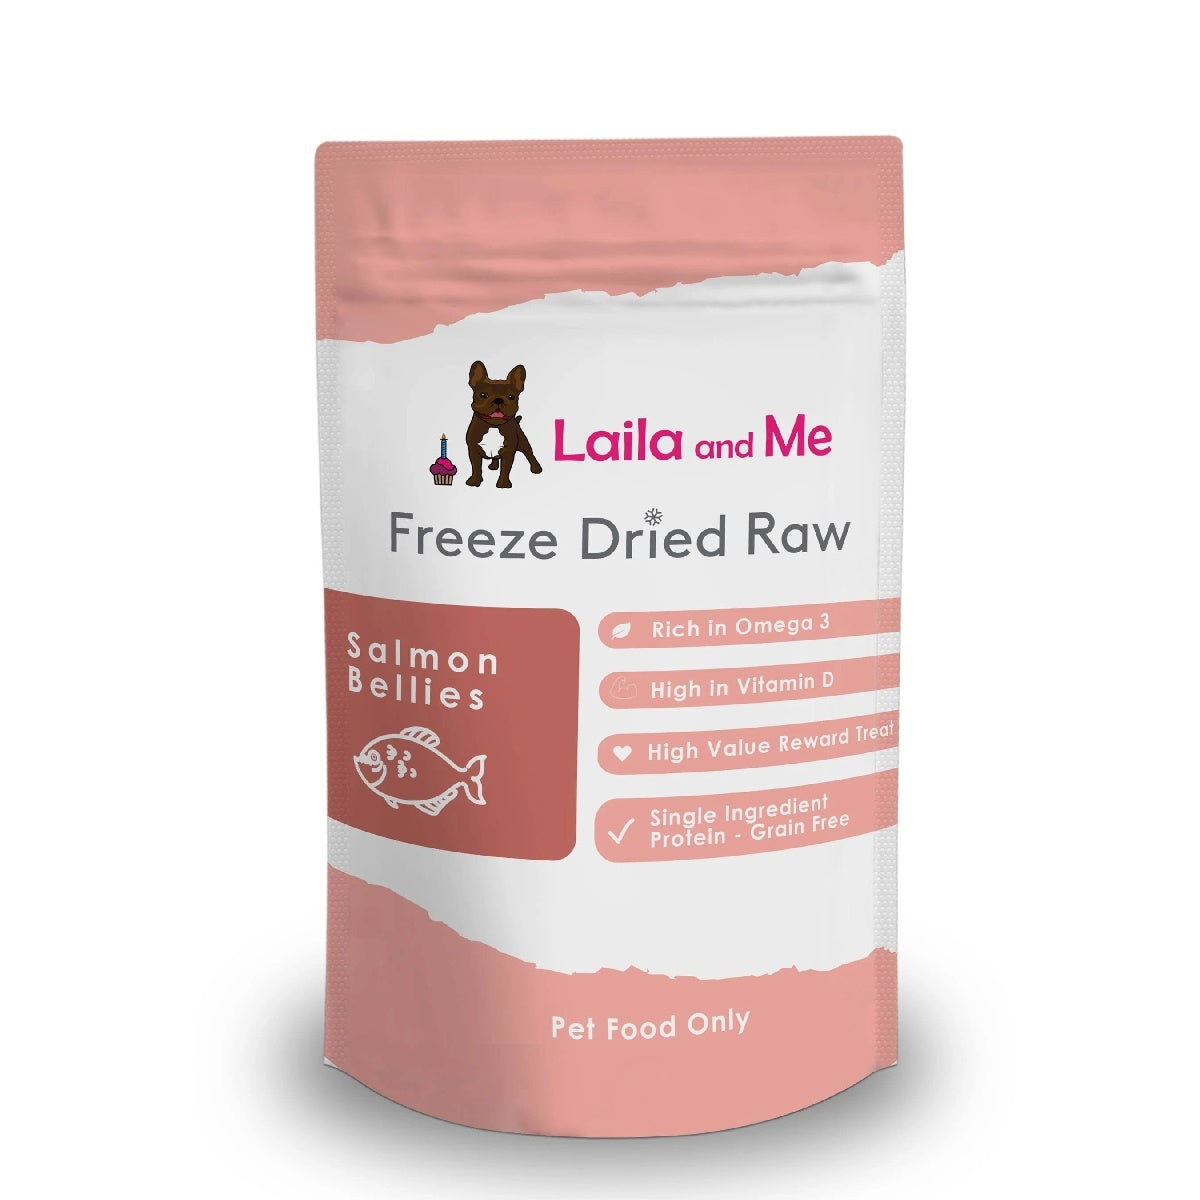 Laila & Me Freeze Dried Raw Salmon Bellies